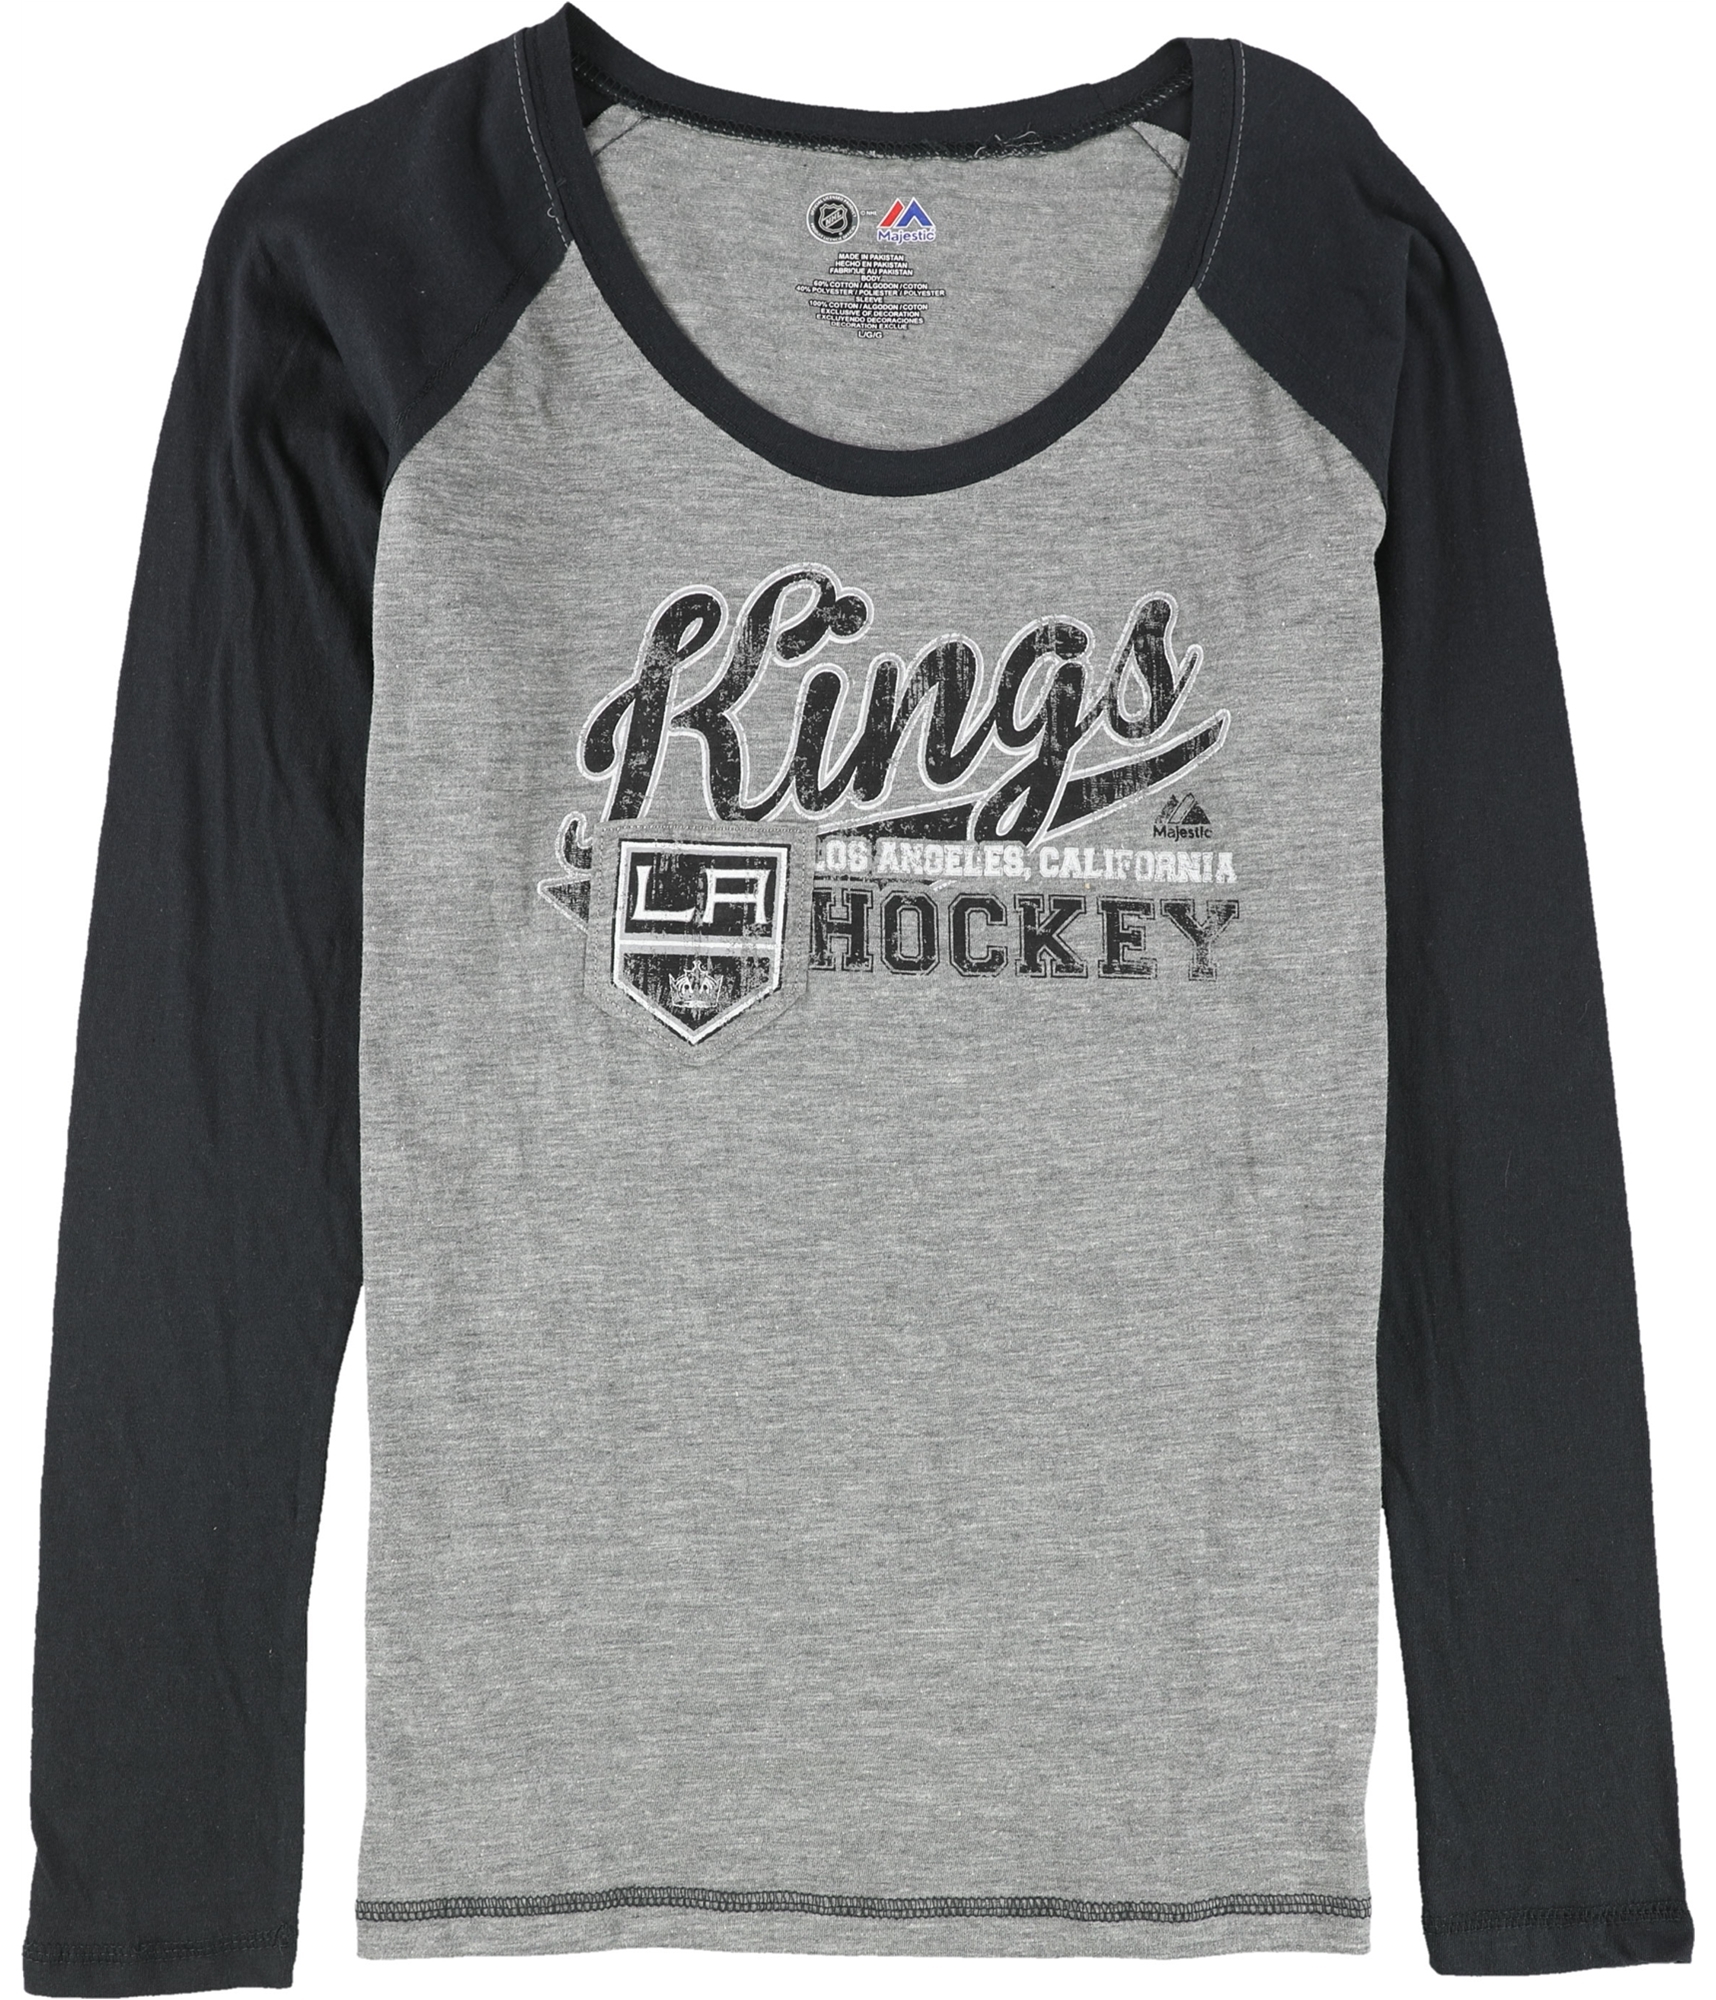 Reebok Girls La Kings Hockey Graphic T-Shirt, TW1